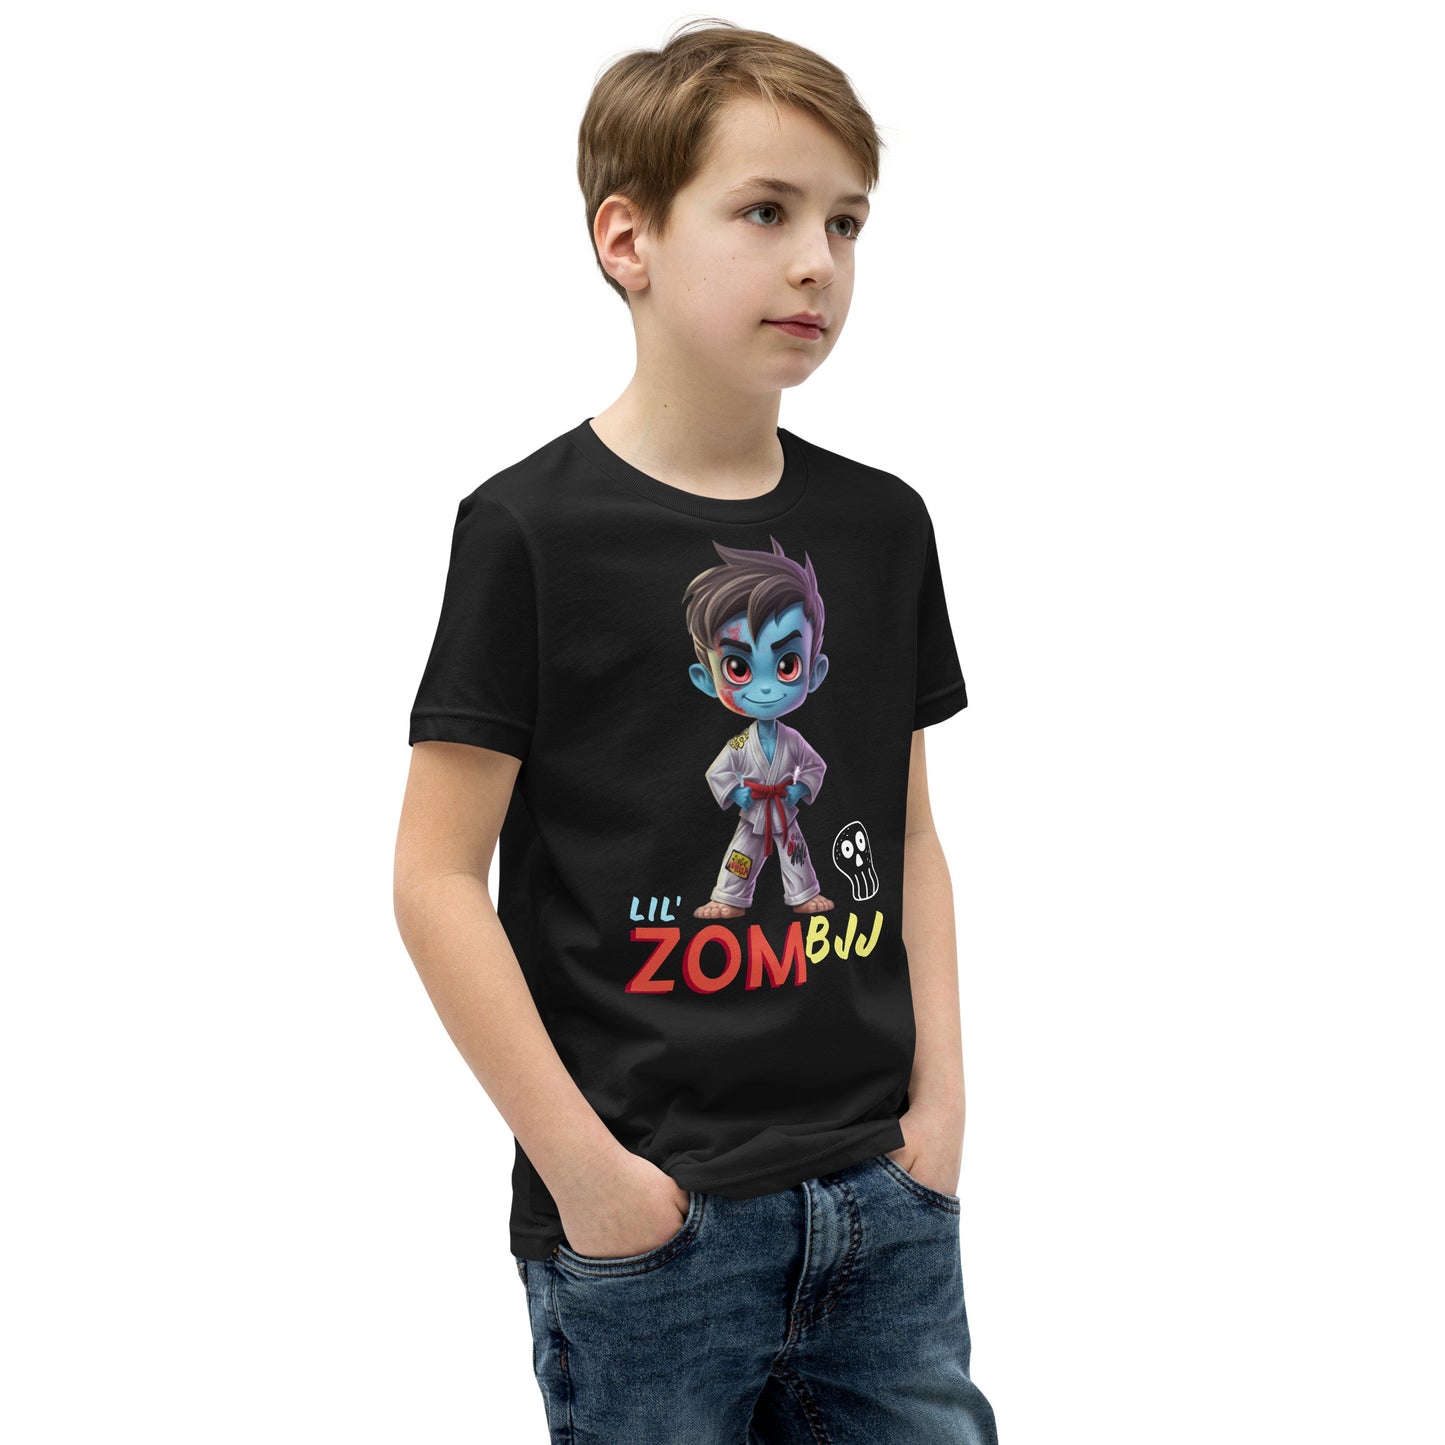 Lil' ZomBJJ T-Shirt